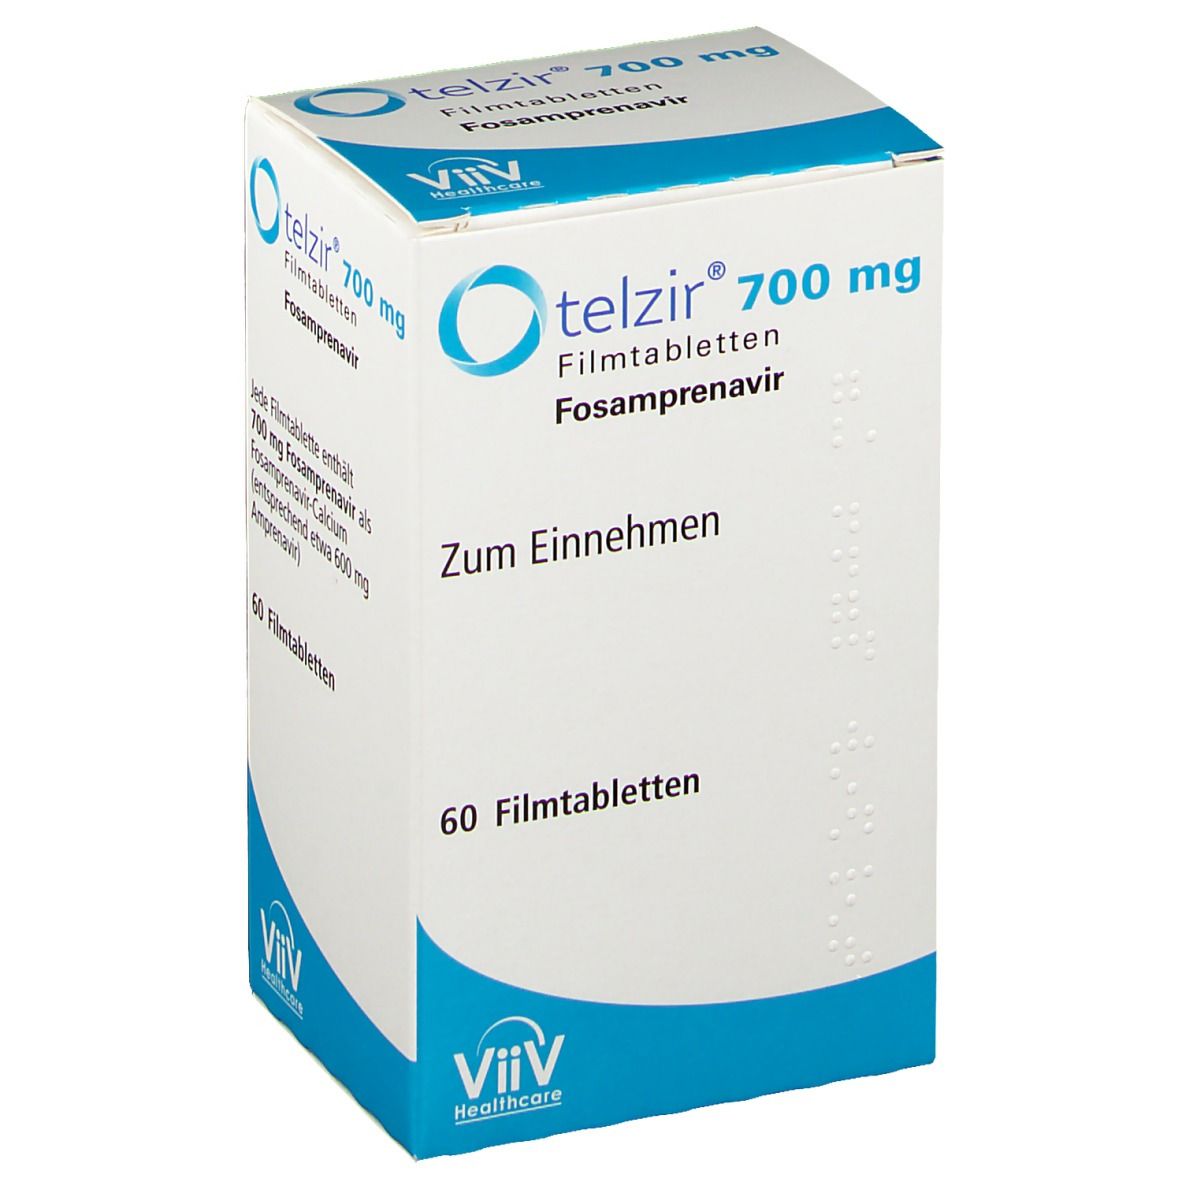 telzir® 700 mg